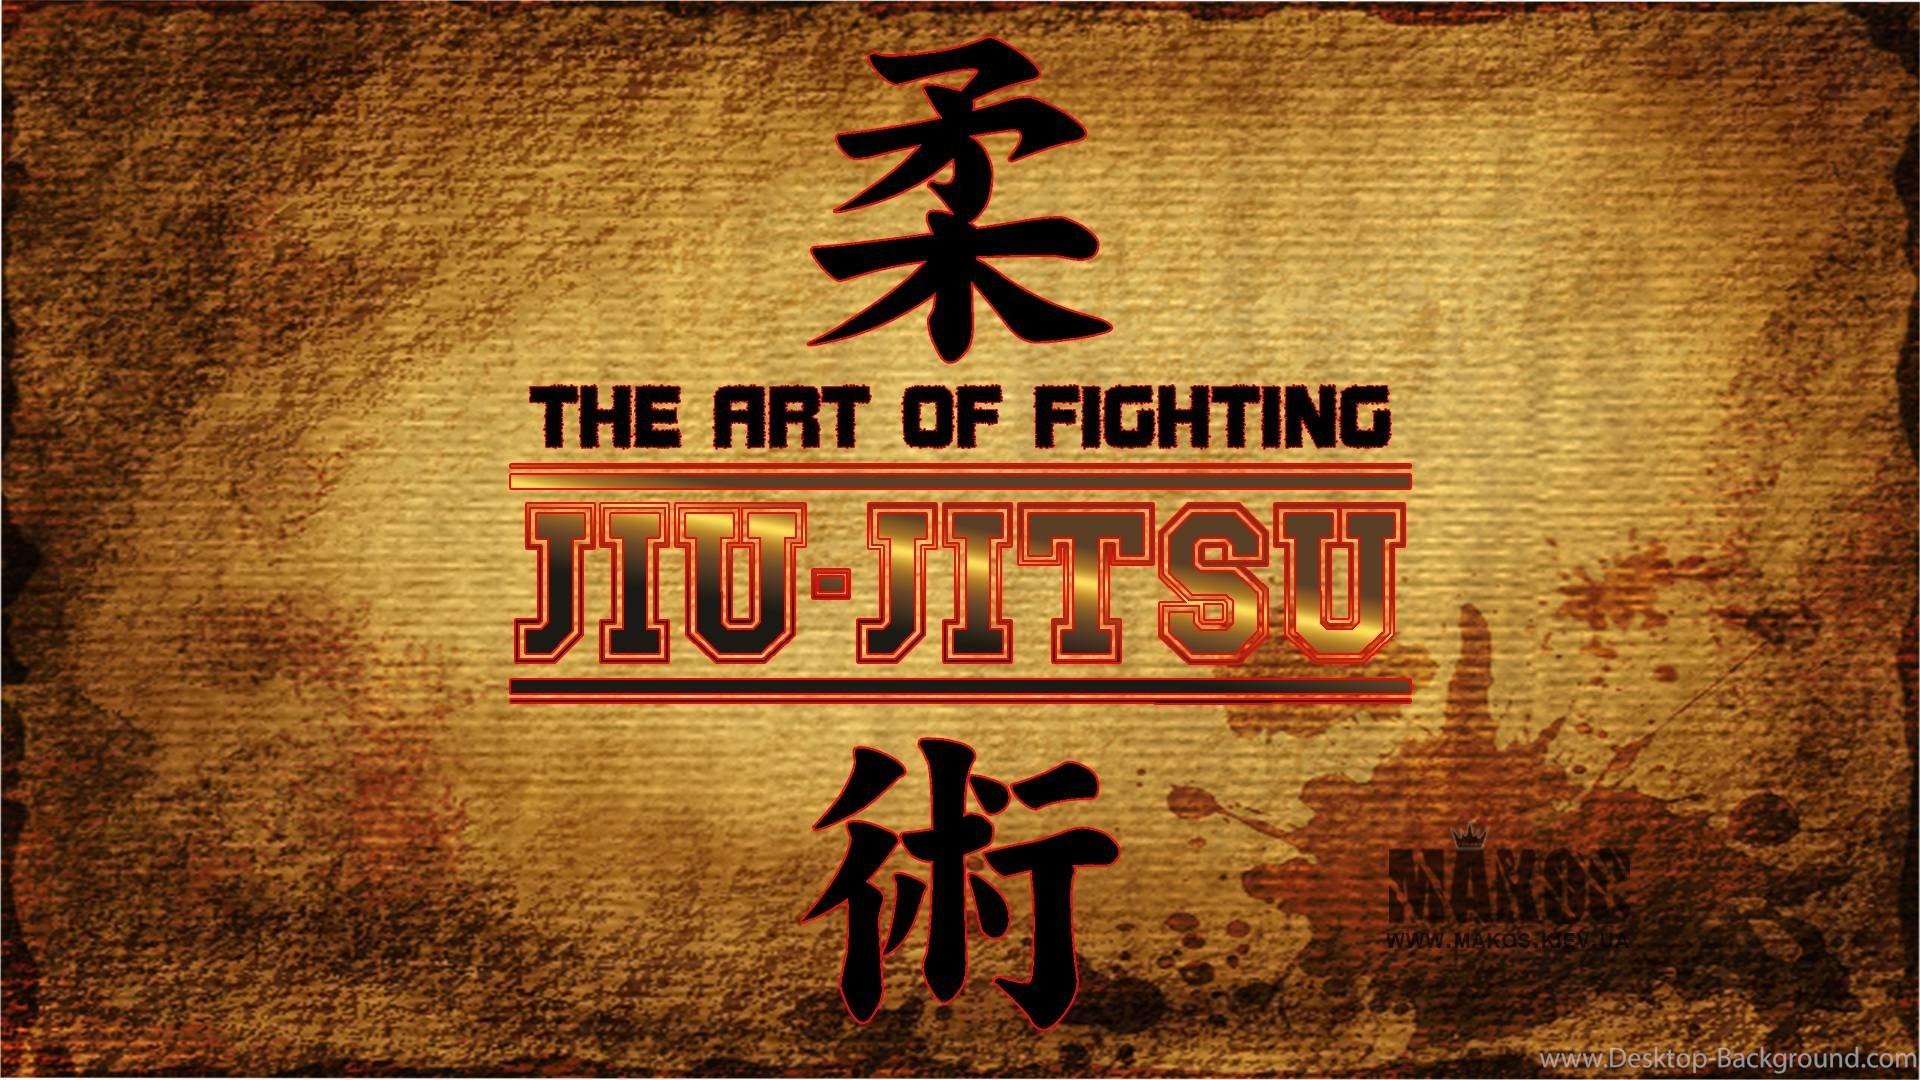 Group of Jiu Jitsu Wallpaper HD